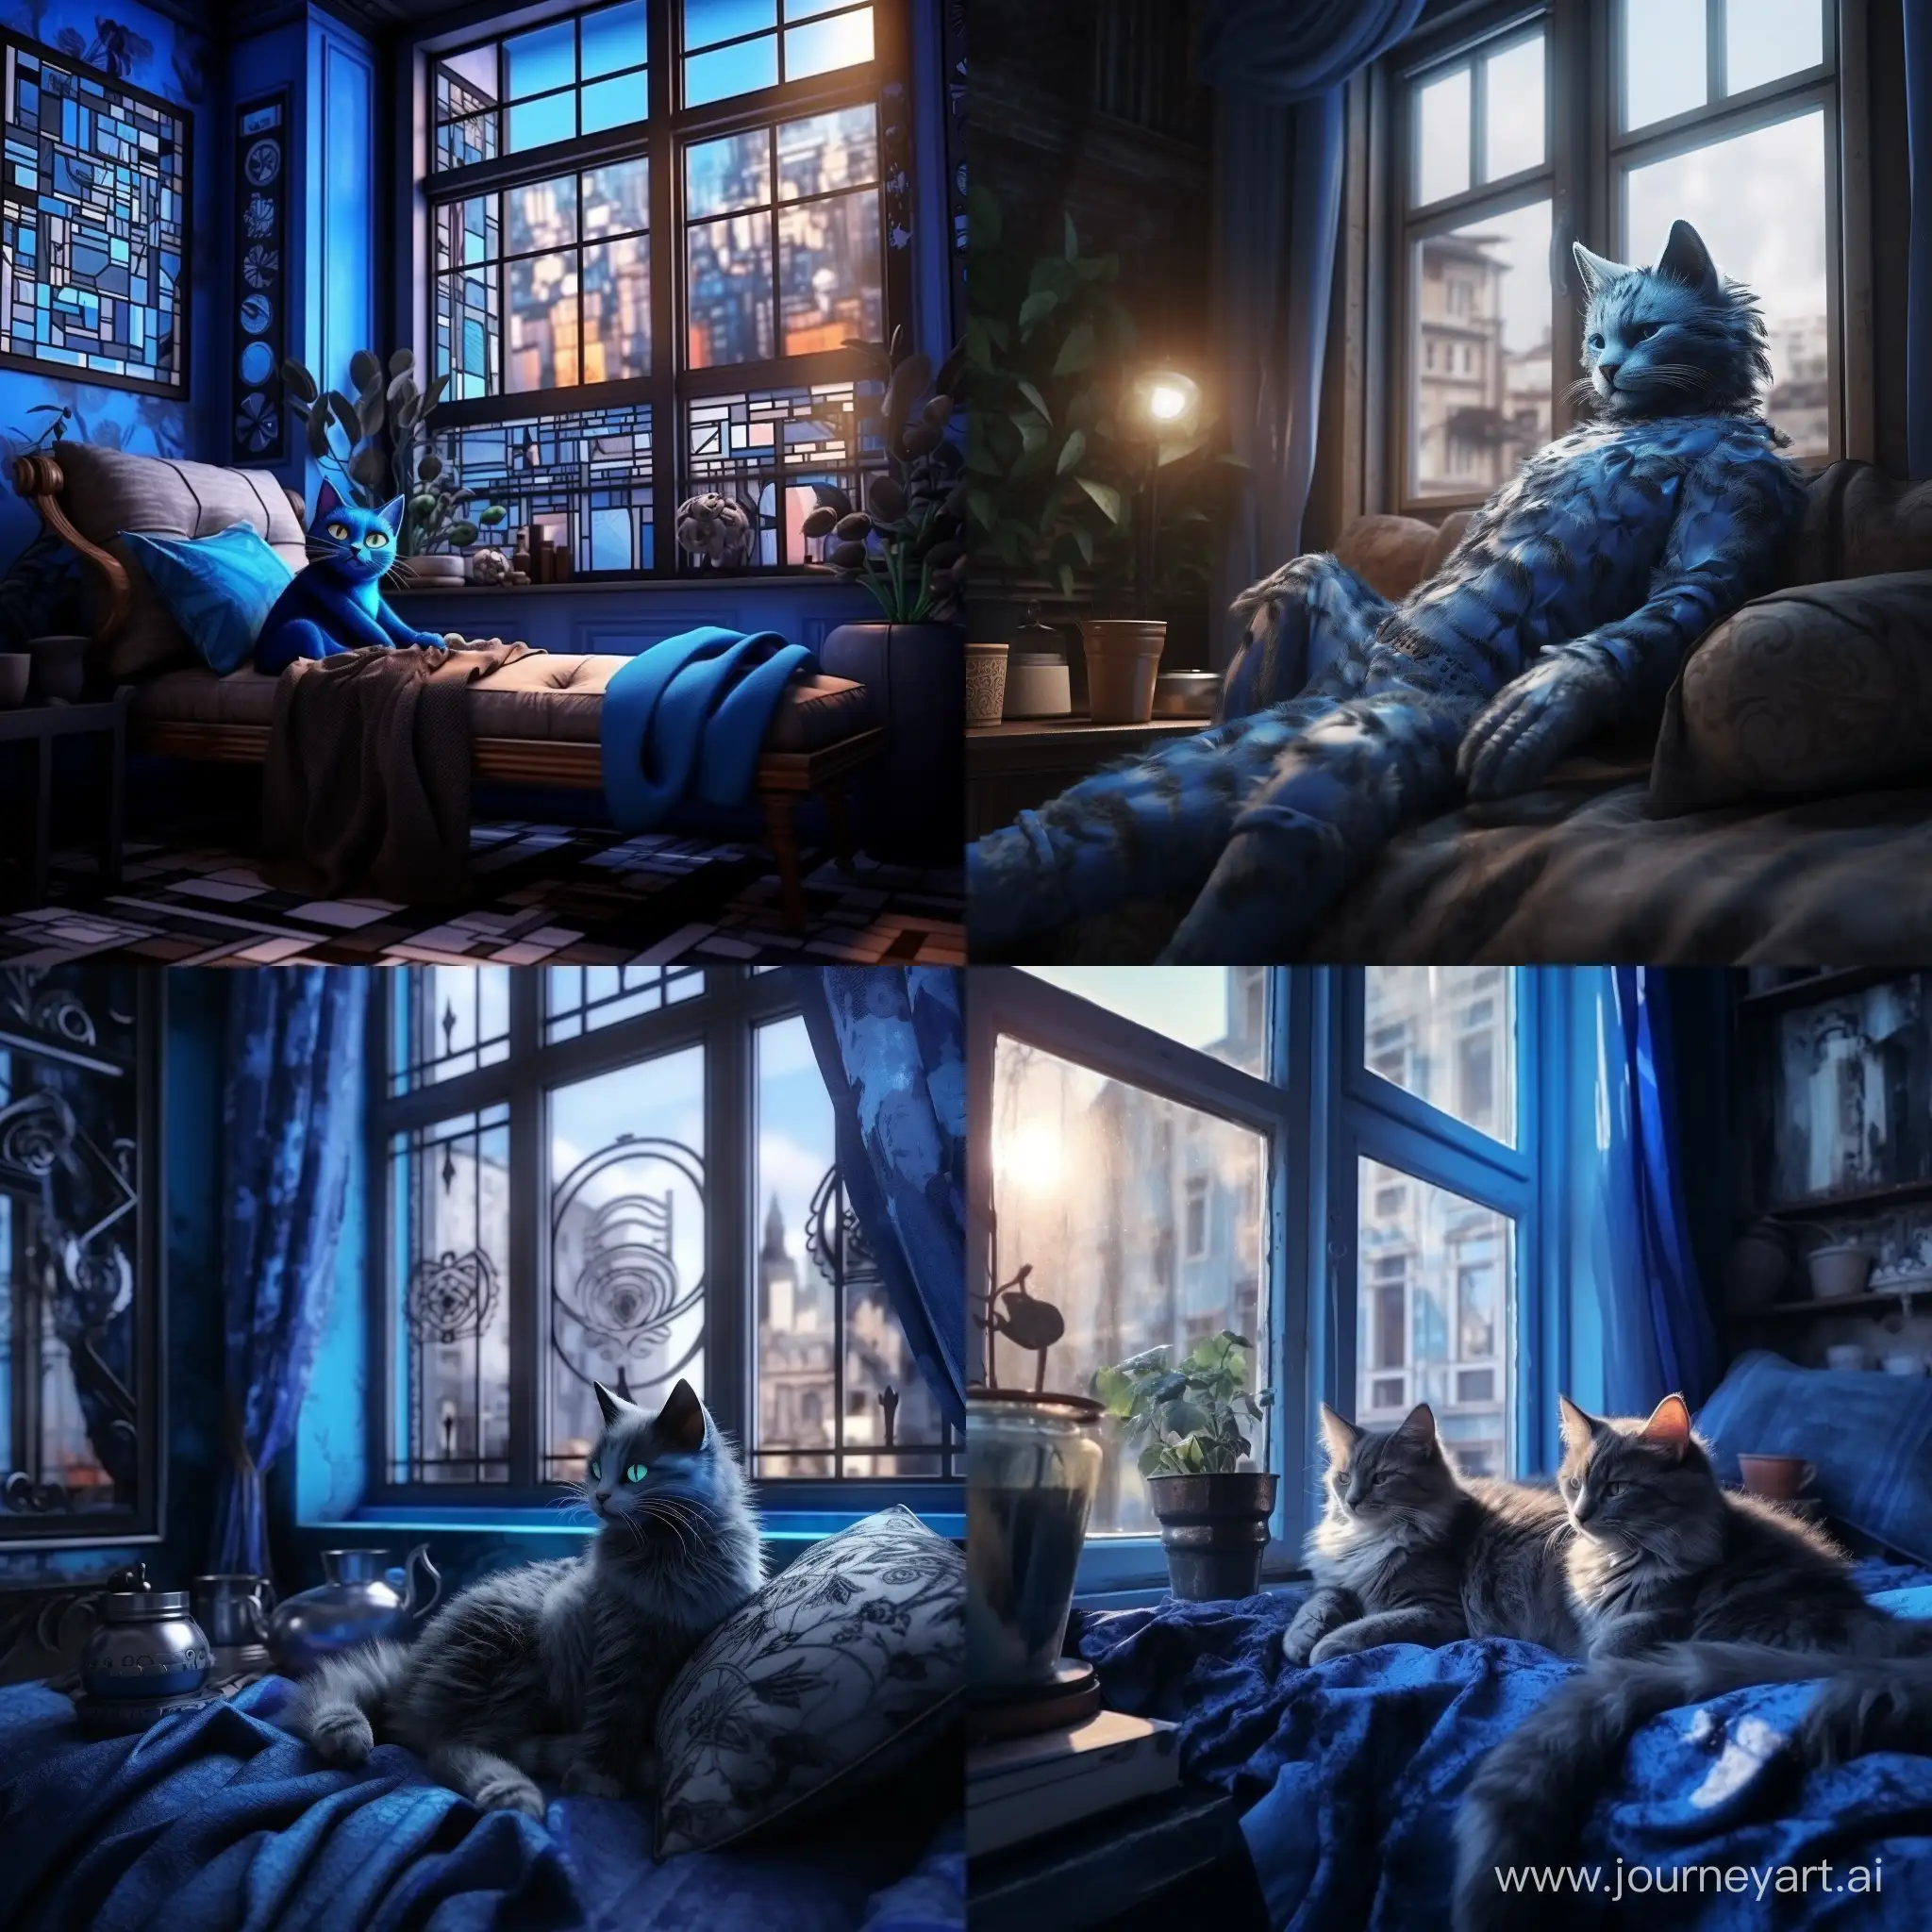 голубая кошка с черными узорами лениво разлеглась на фоне квартиры, мягкий свет проникает через окна отбрасывая блики на кошку